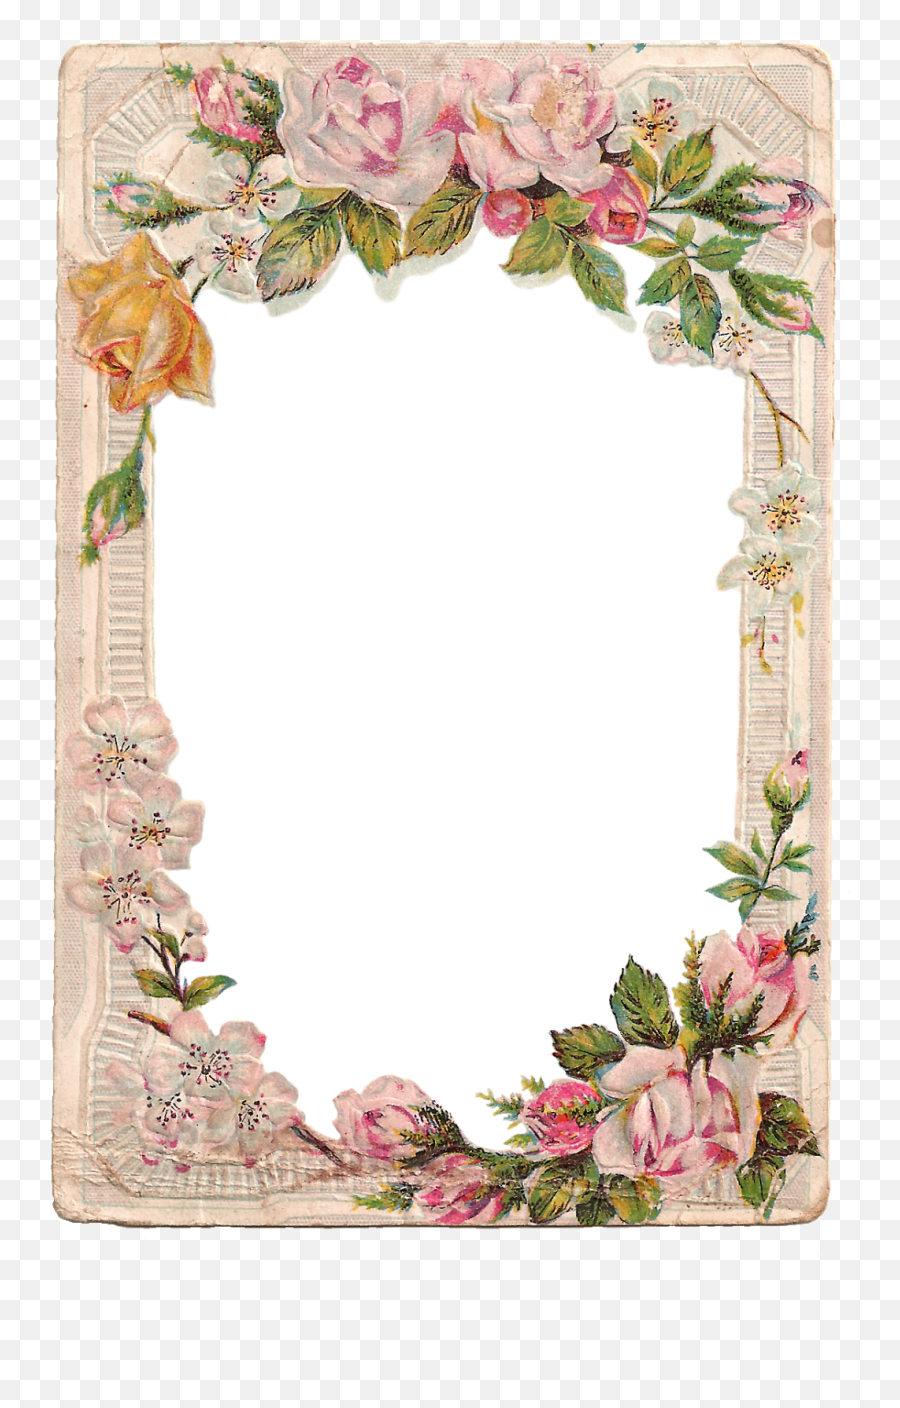 Free Vintage Digital Flower Frame With Roses And Dogwood - Frame Flower Border Design Png,Vintage Frame Png